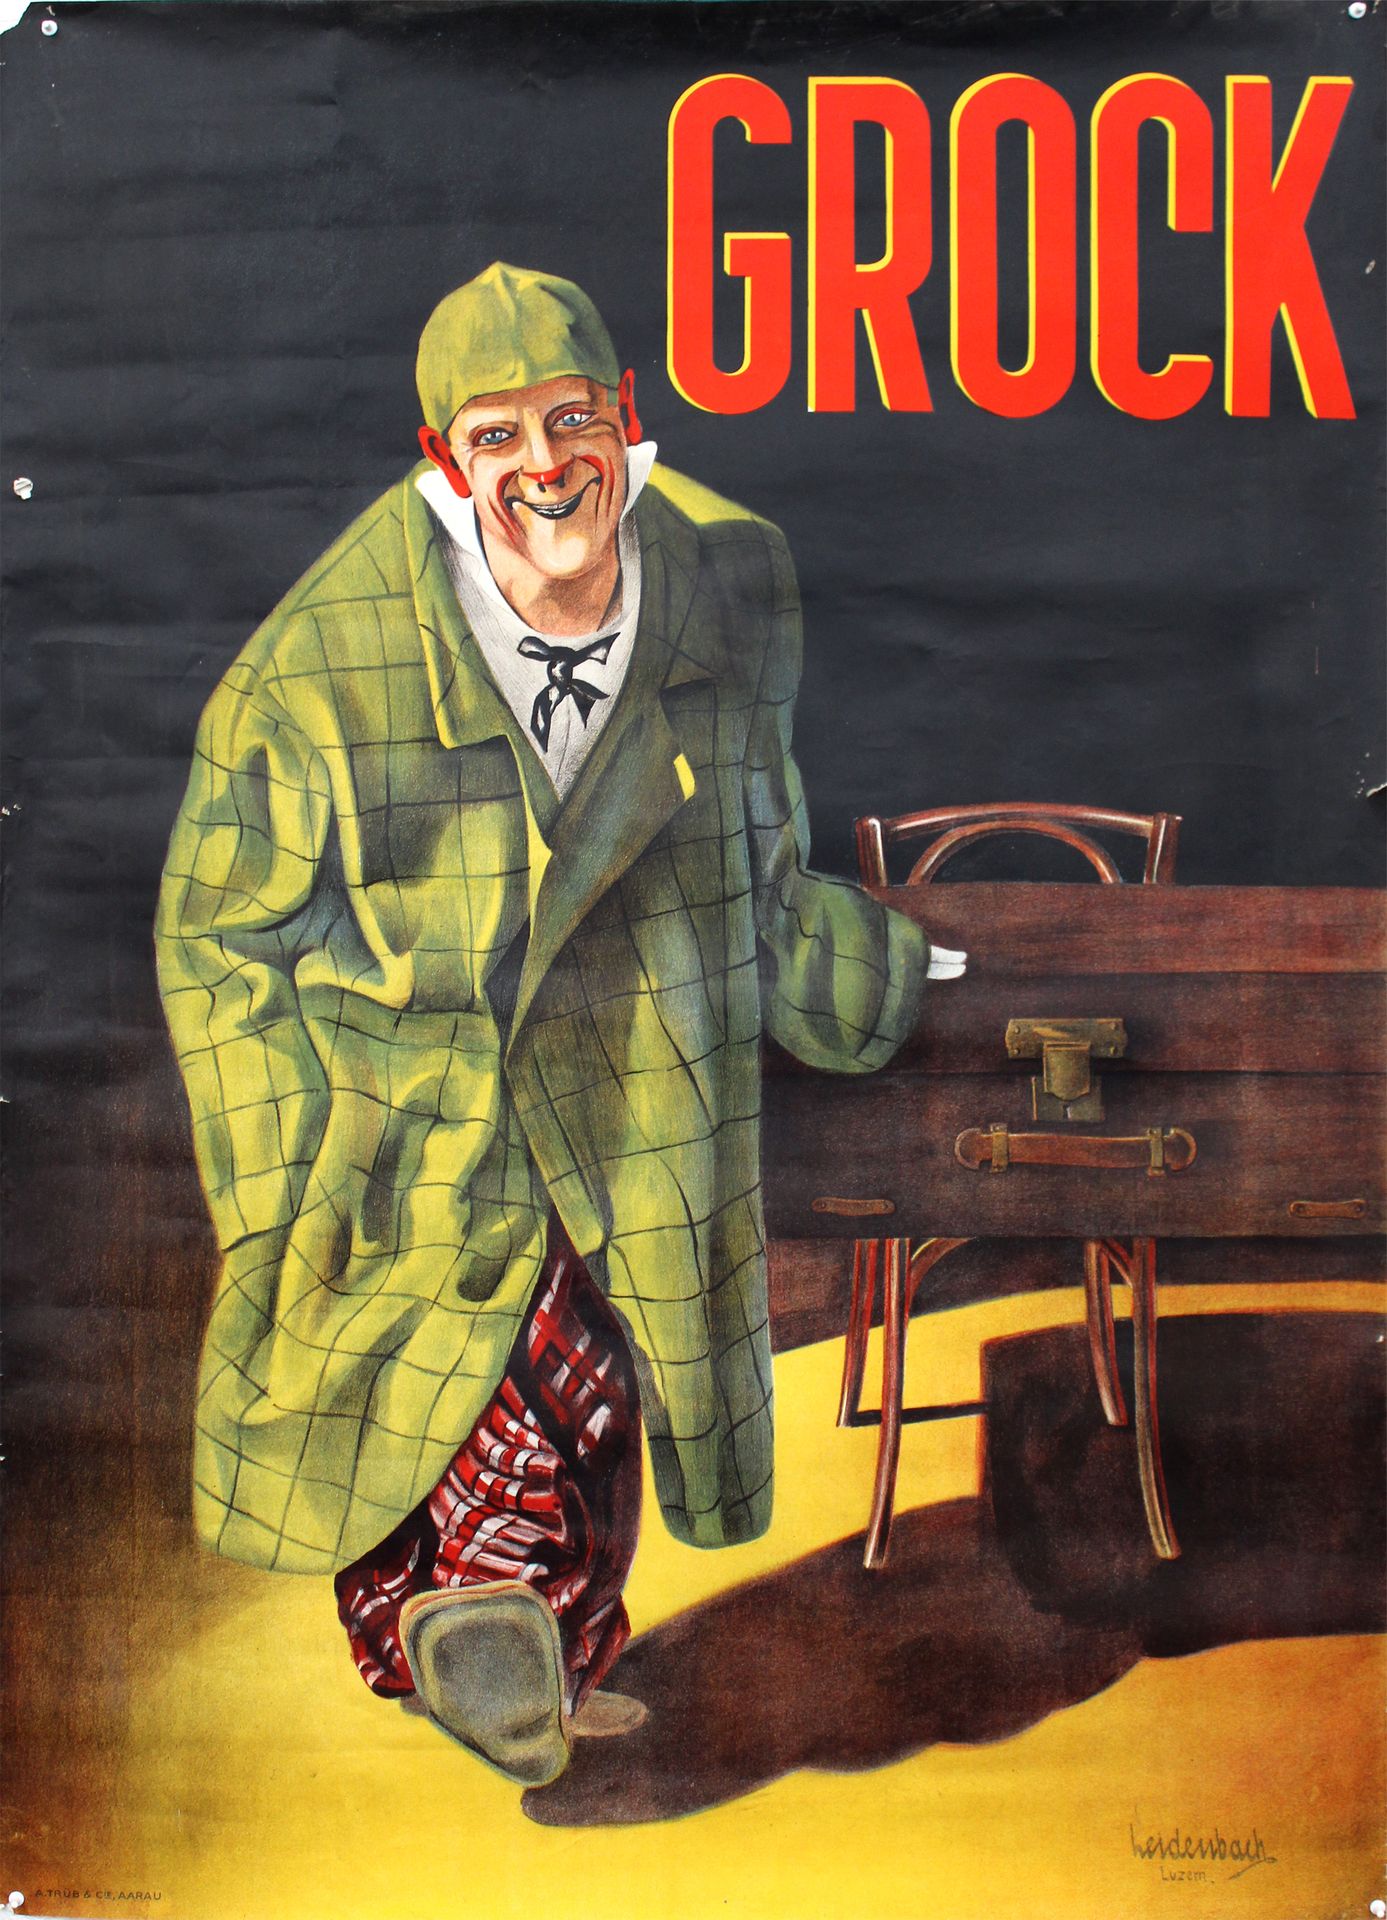 Null POSTER LITOGRAFICO SUL CIRCOLO, 1950 ca.
Raro poster del famoso clown GROCK&hellip;